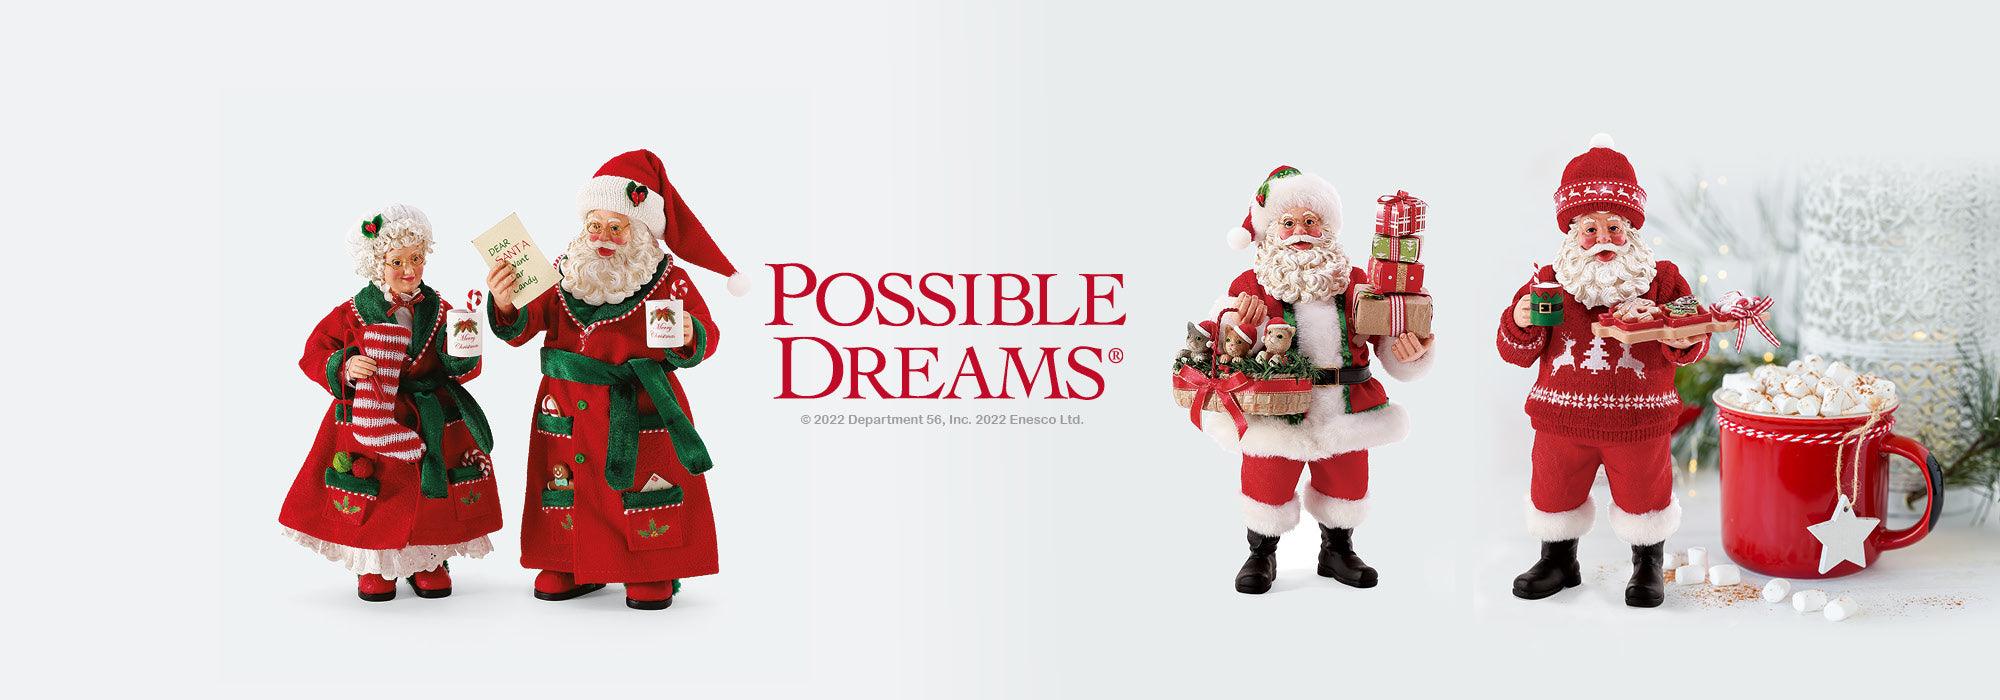 Possible Dreams by Dept56 | Enesco Gift Shop